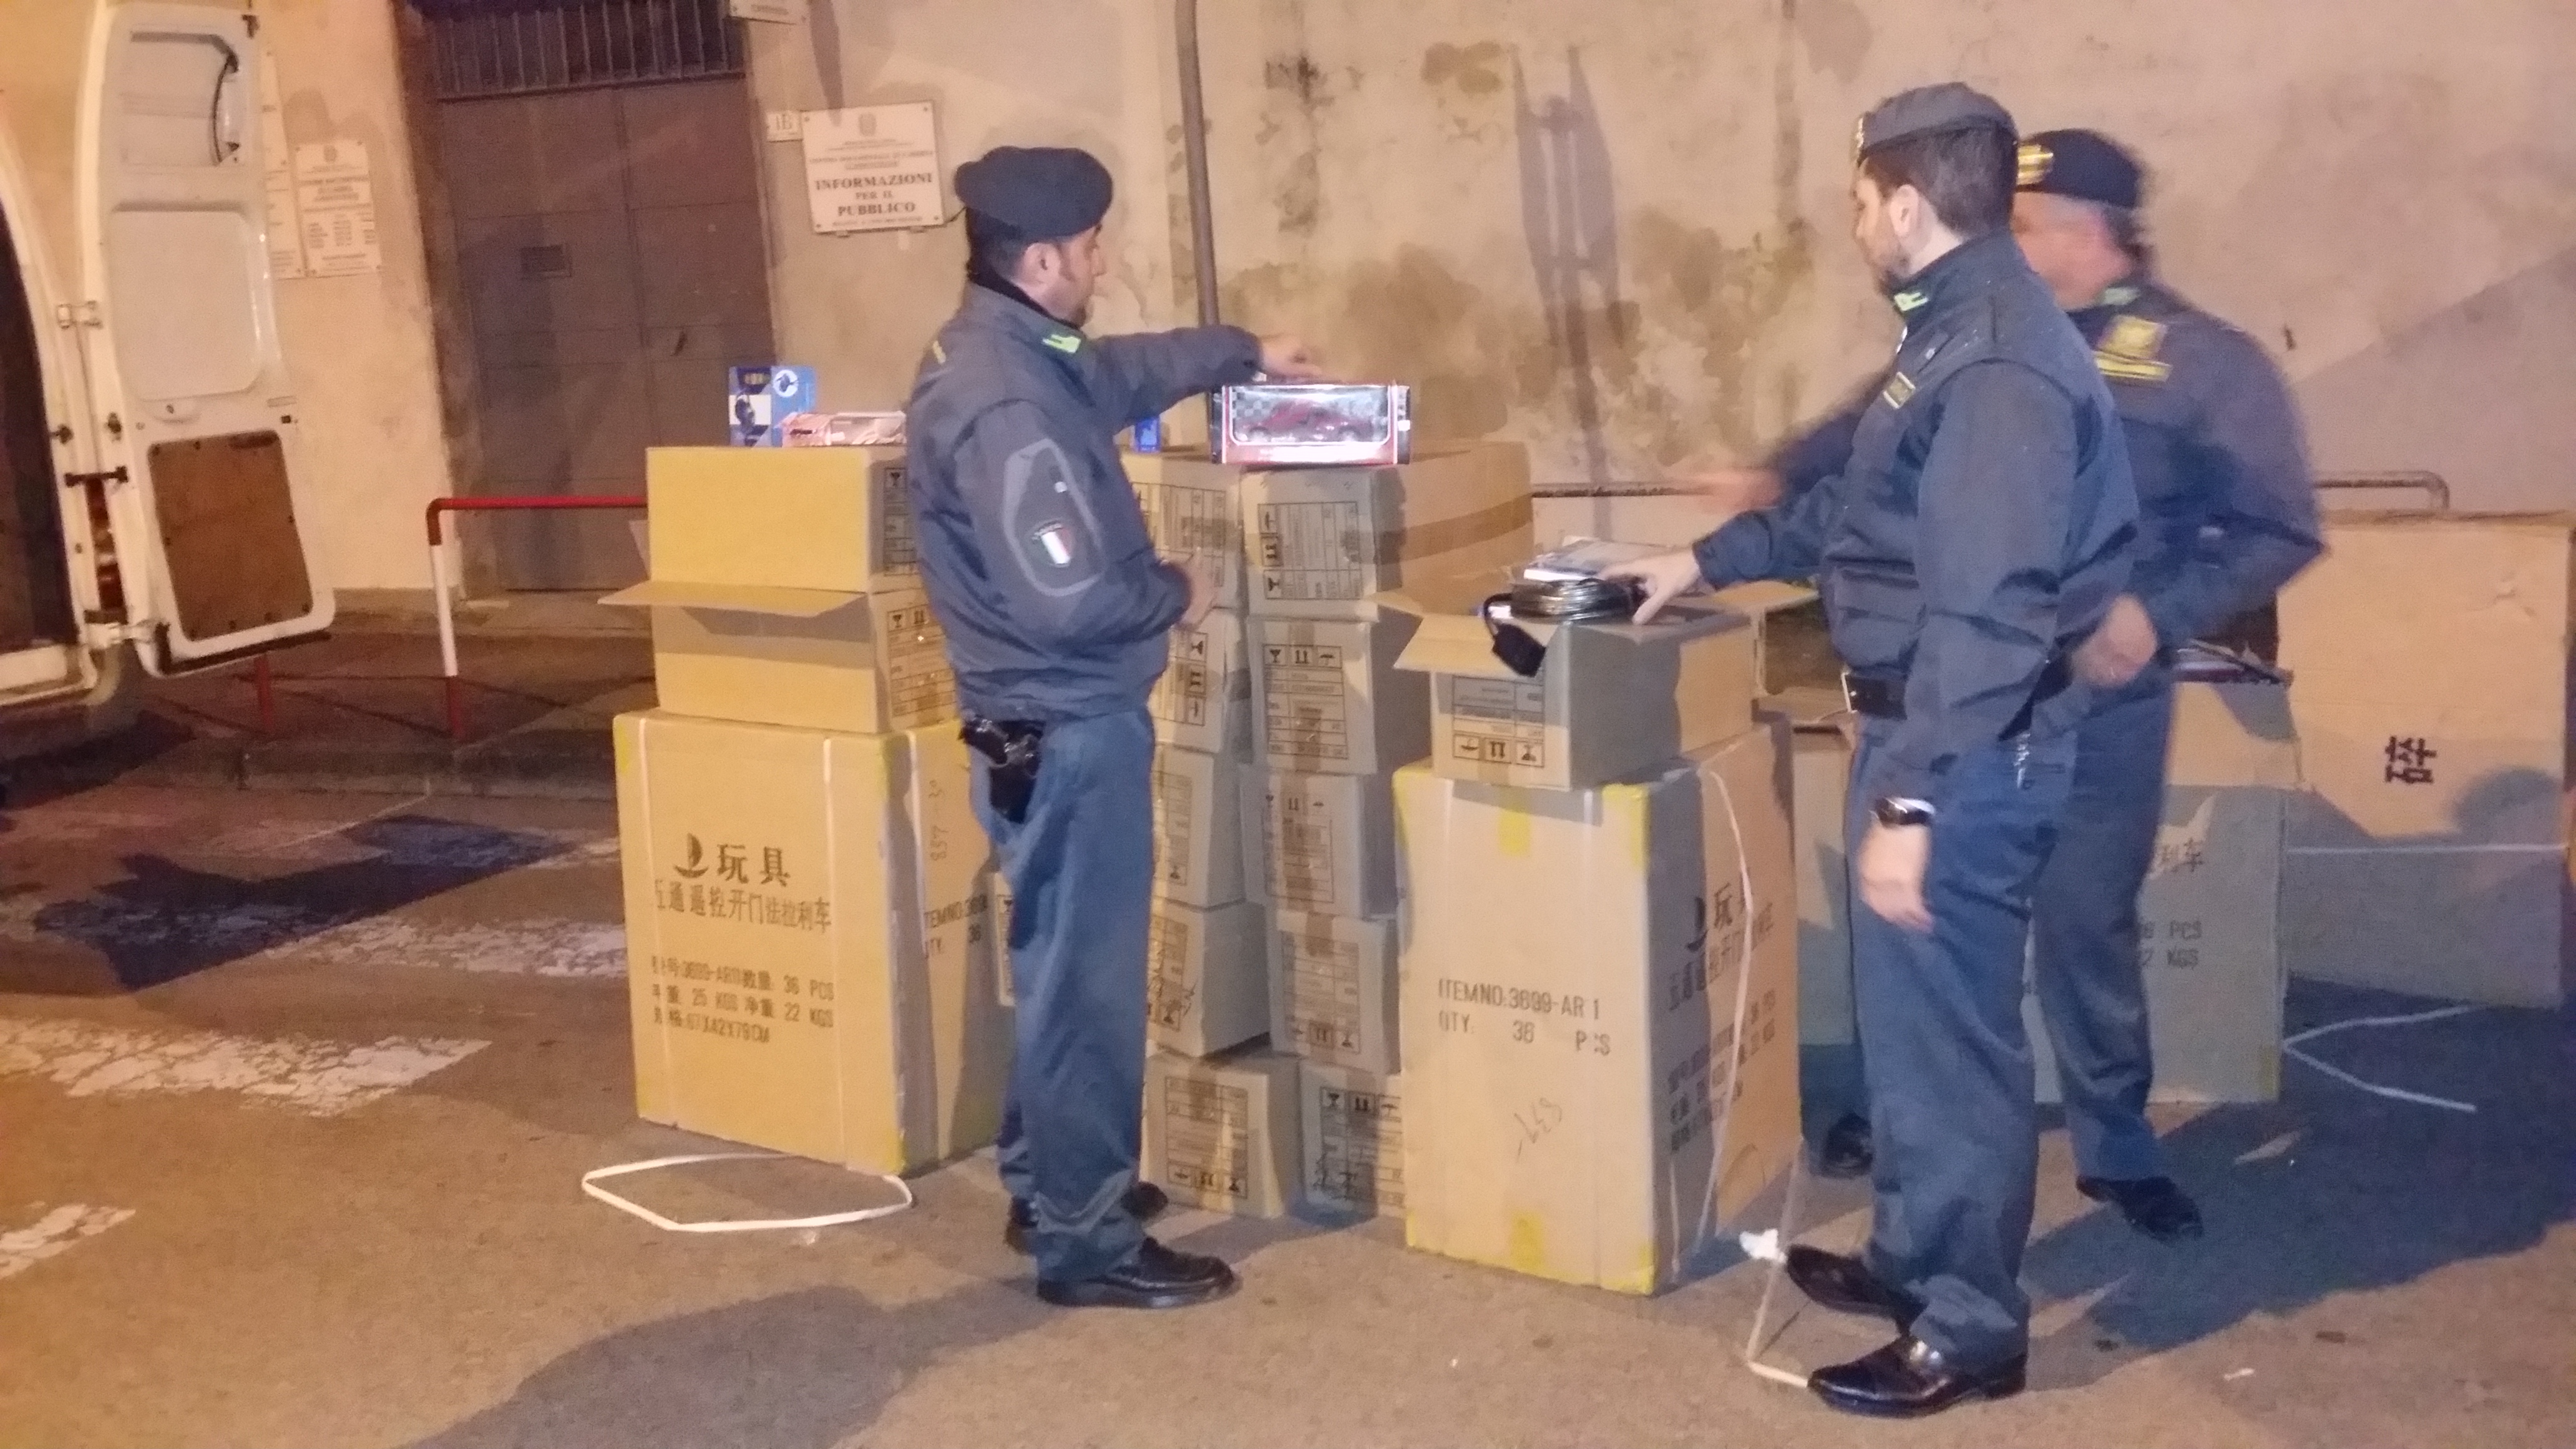  Caserta, sequestrati  oltre 50 mila articoli elettrici ed elettronici contraffatti: 2 persone denunciate